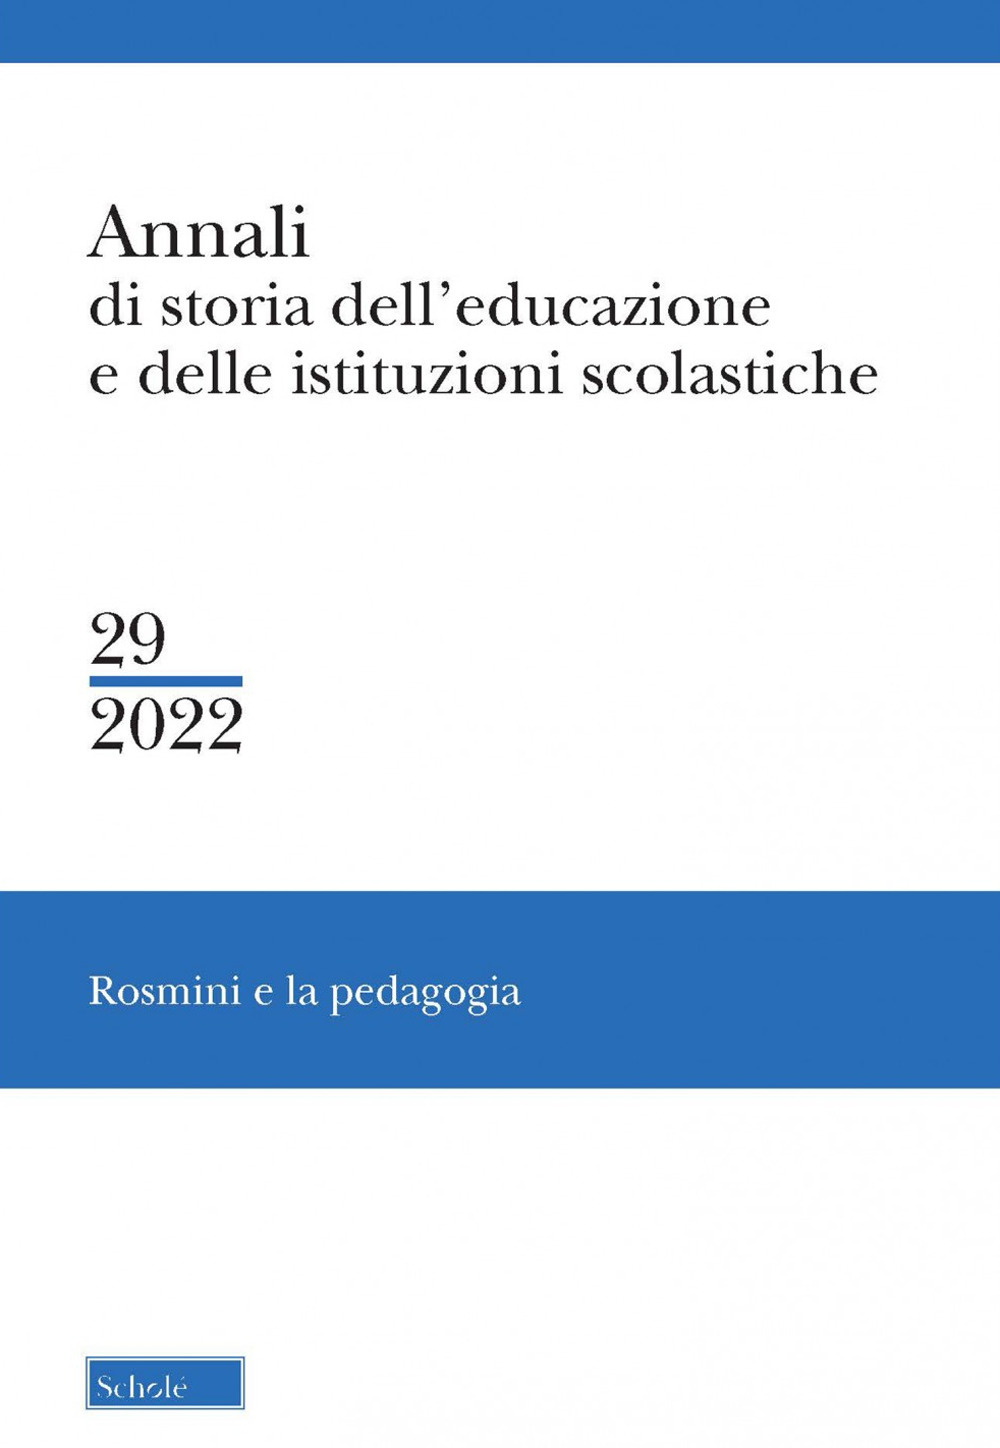 Annali di storia dell'educazione e delle istituzioni scolastiche (2022). Vol. 29: Rosmini e la pedagogia